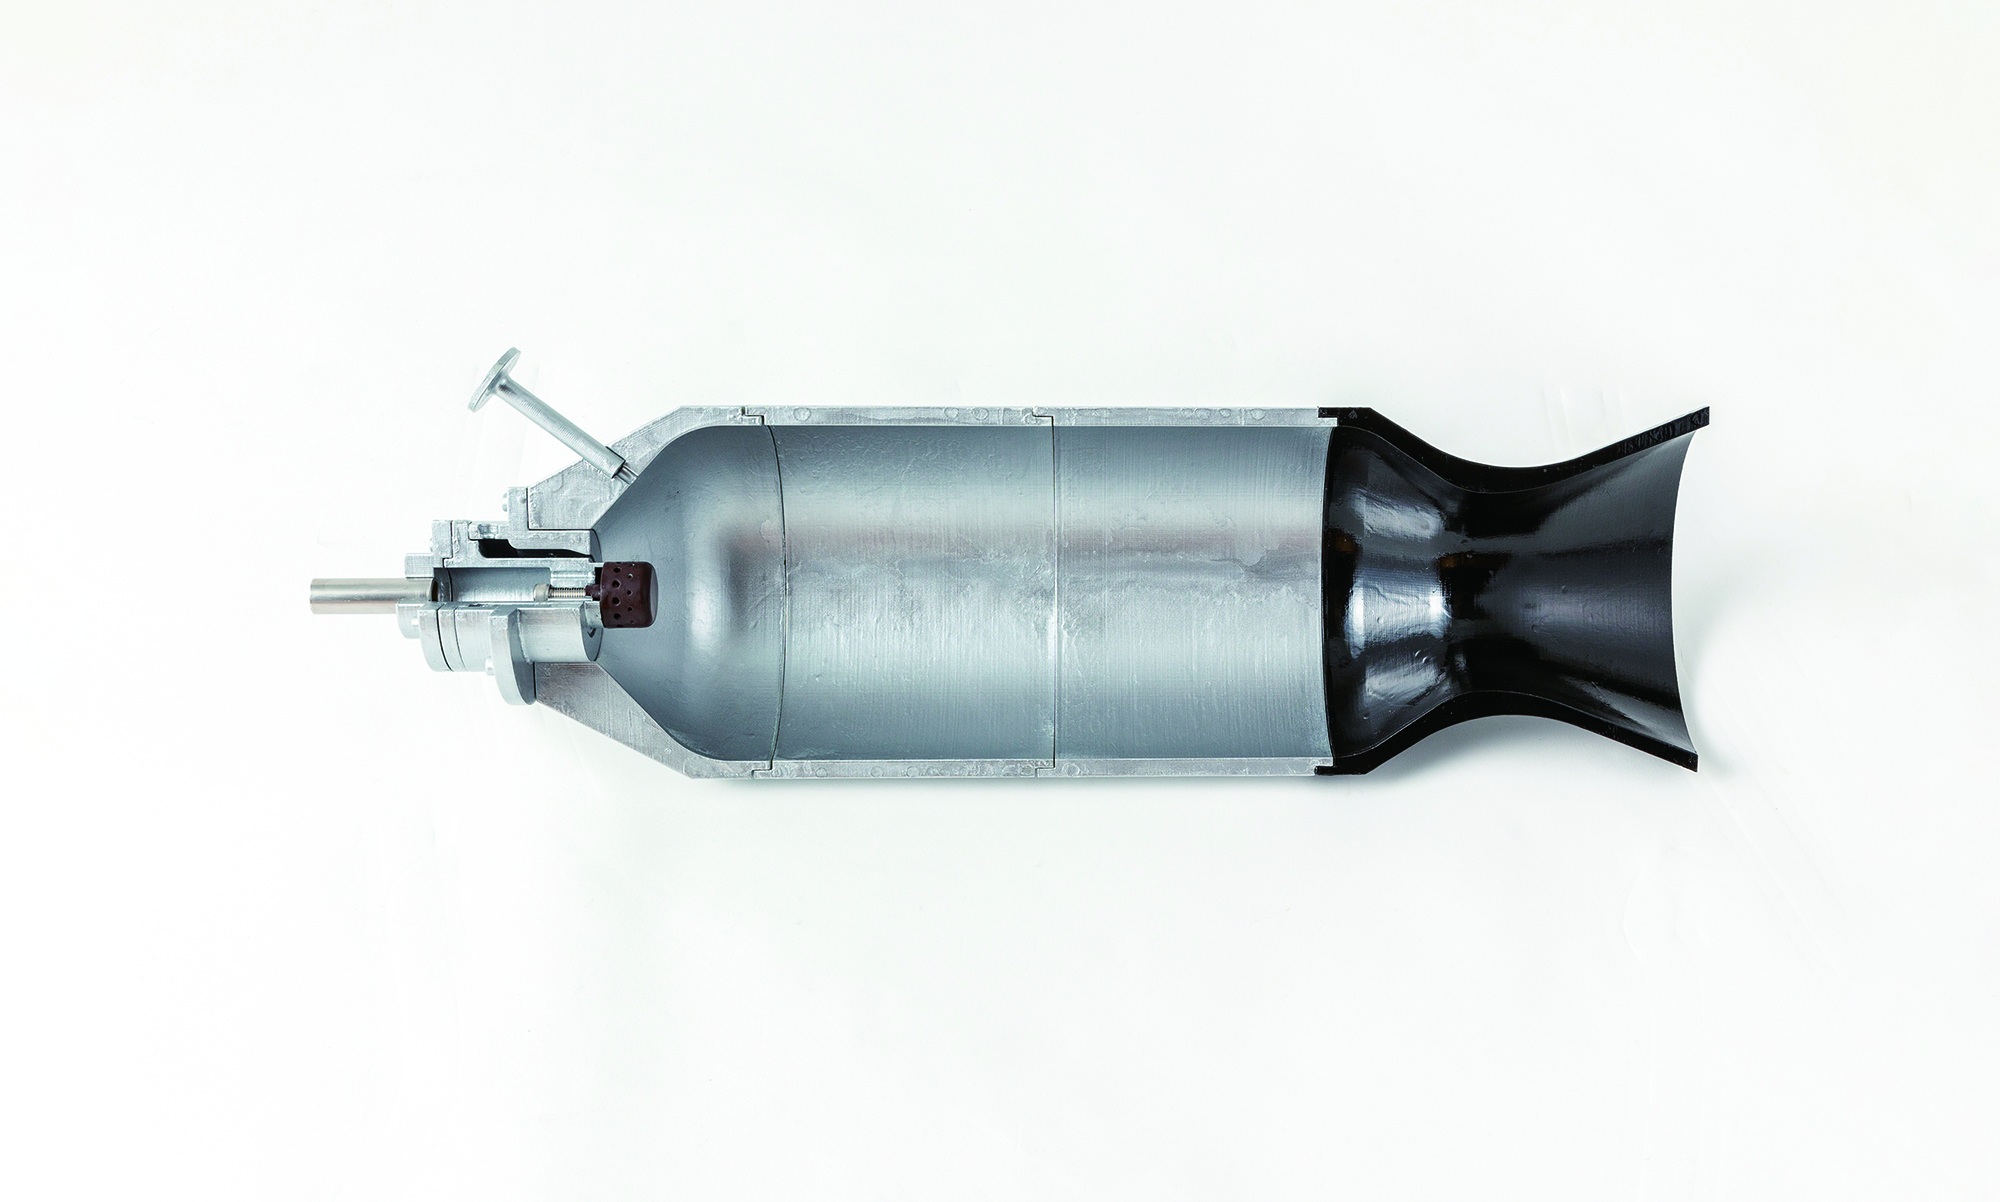 ピントル型噴射器を備えたロケットエンジン燃焼器模型